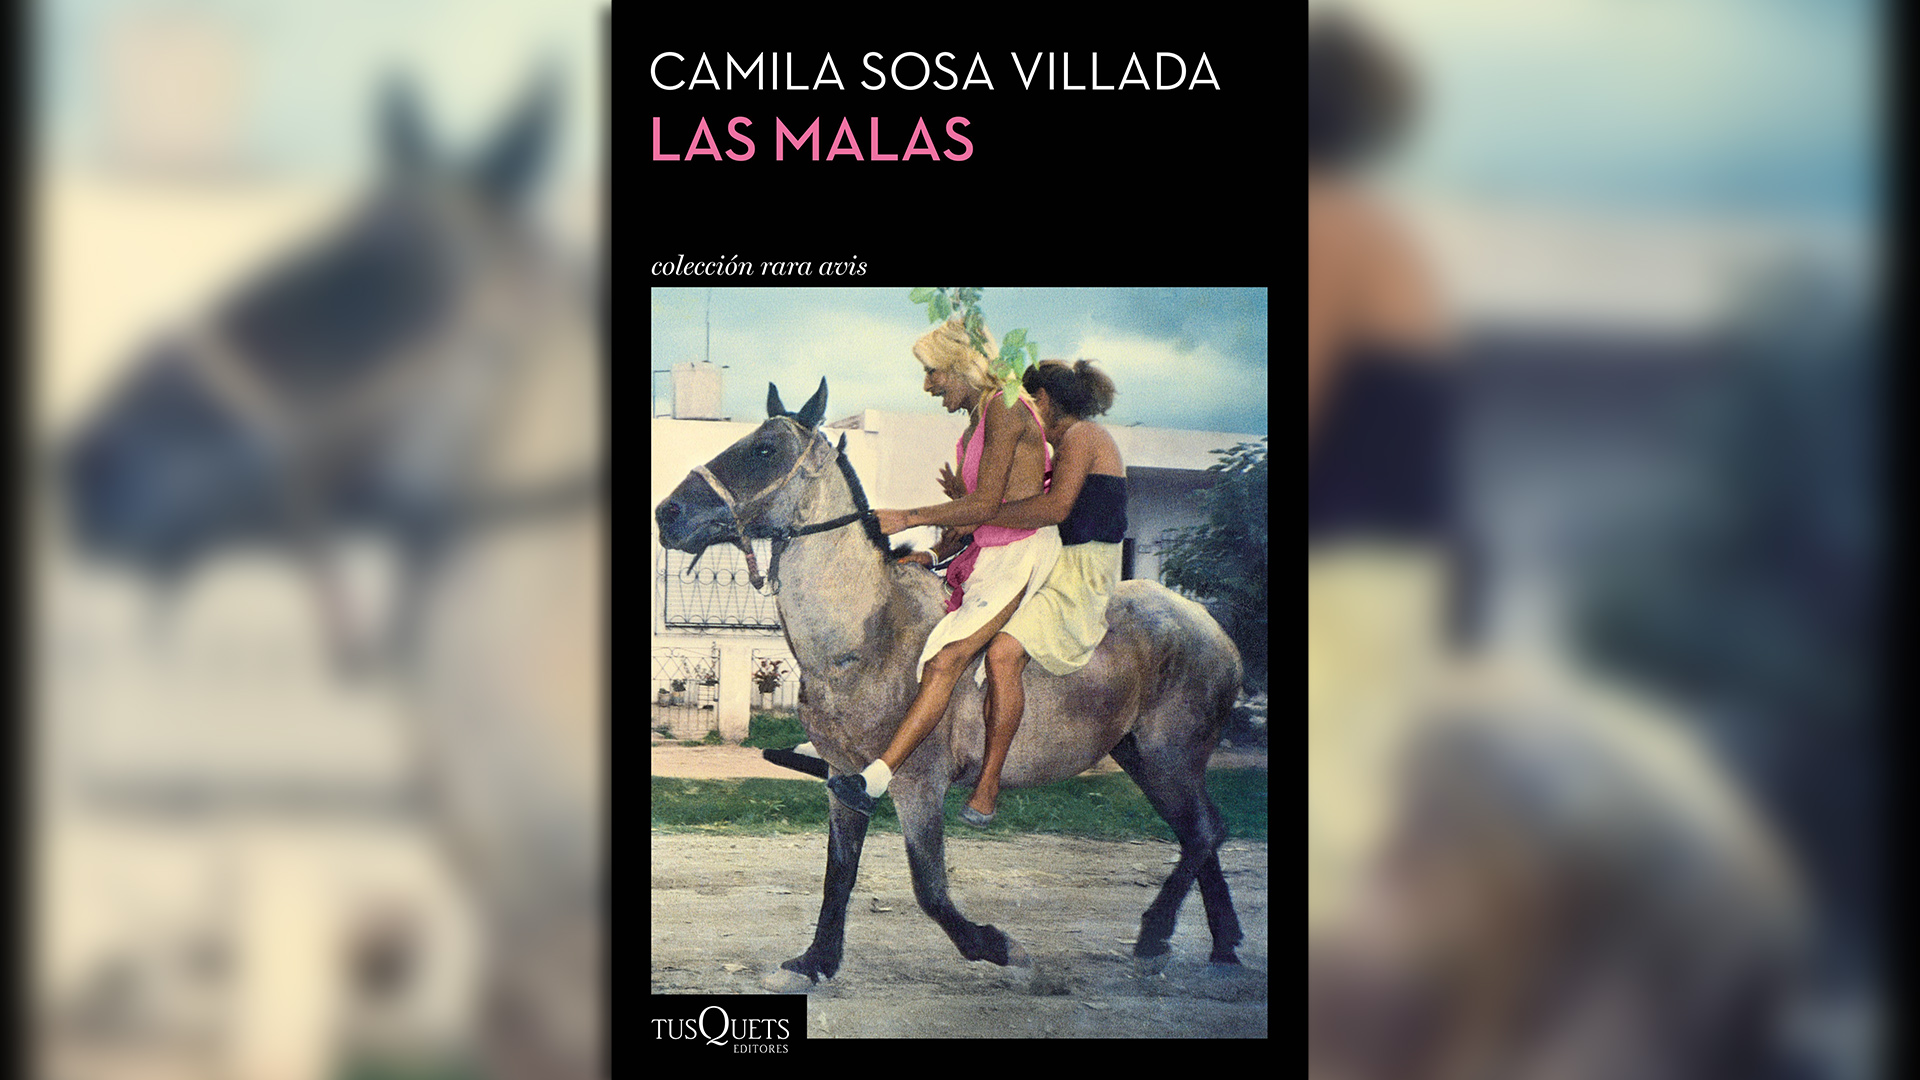 Las malas, de Camila Sosa Villada, uno de los títulos de Rara Avis, la colección que dirige Forn